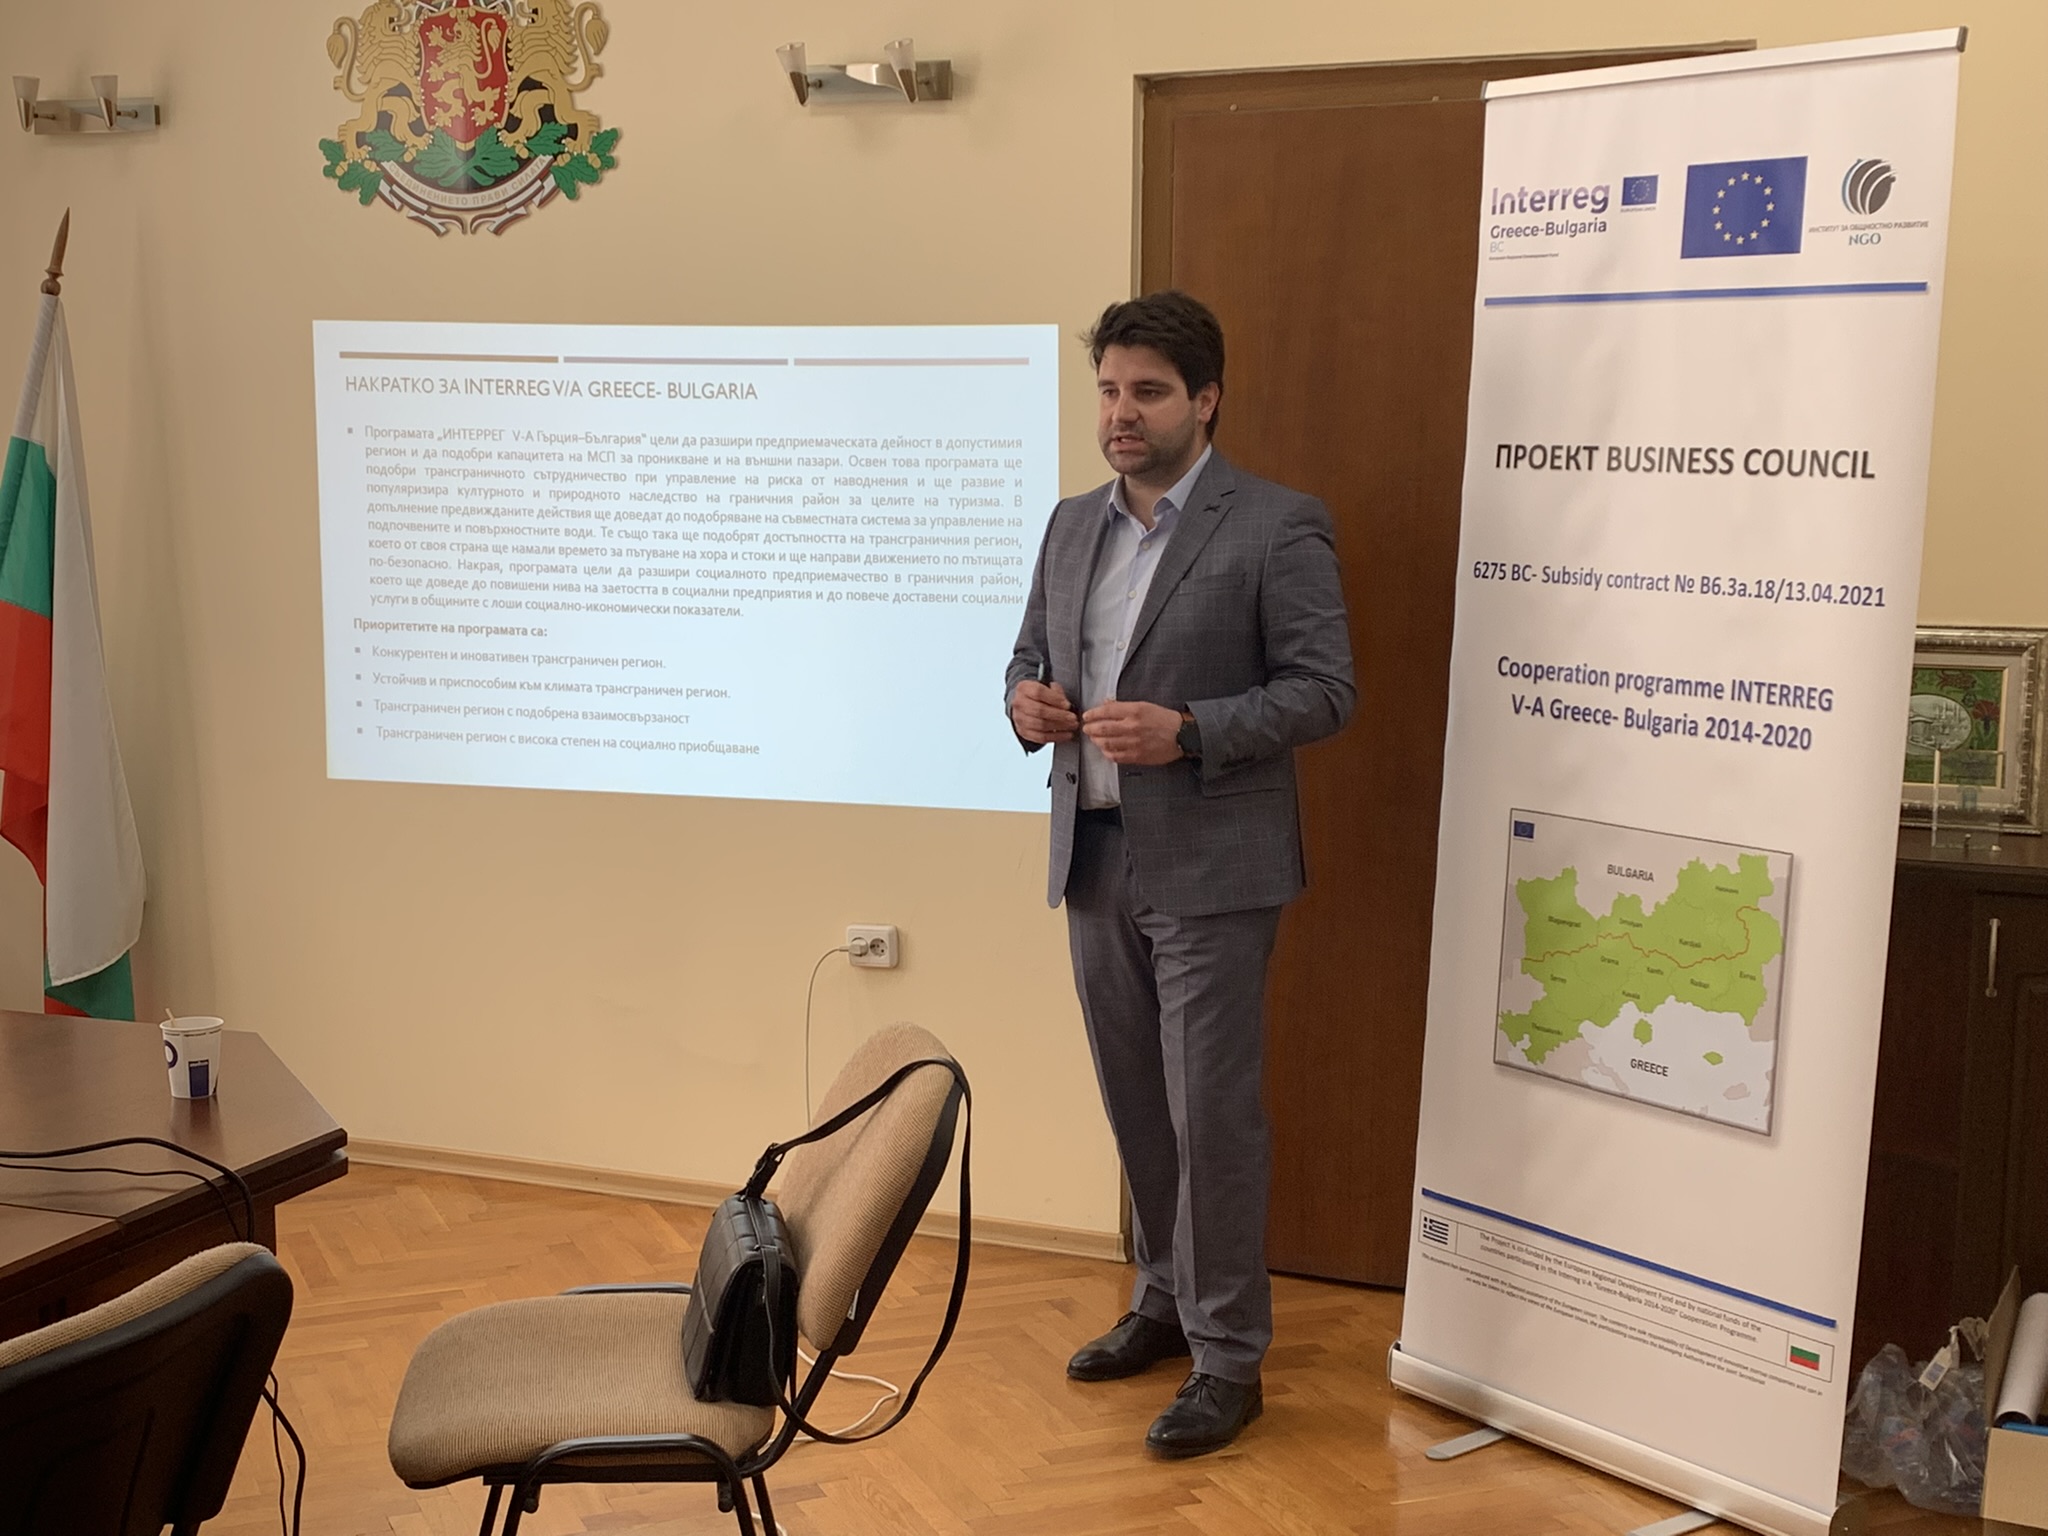 Проведе се информационна среща с представители на местната власт в община Хасково